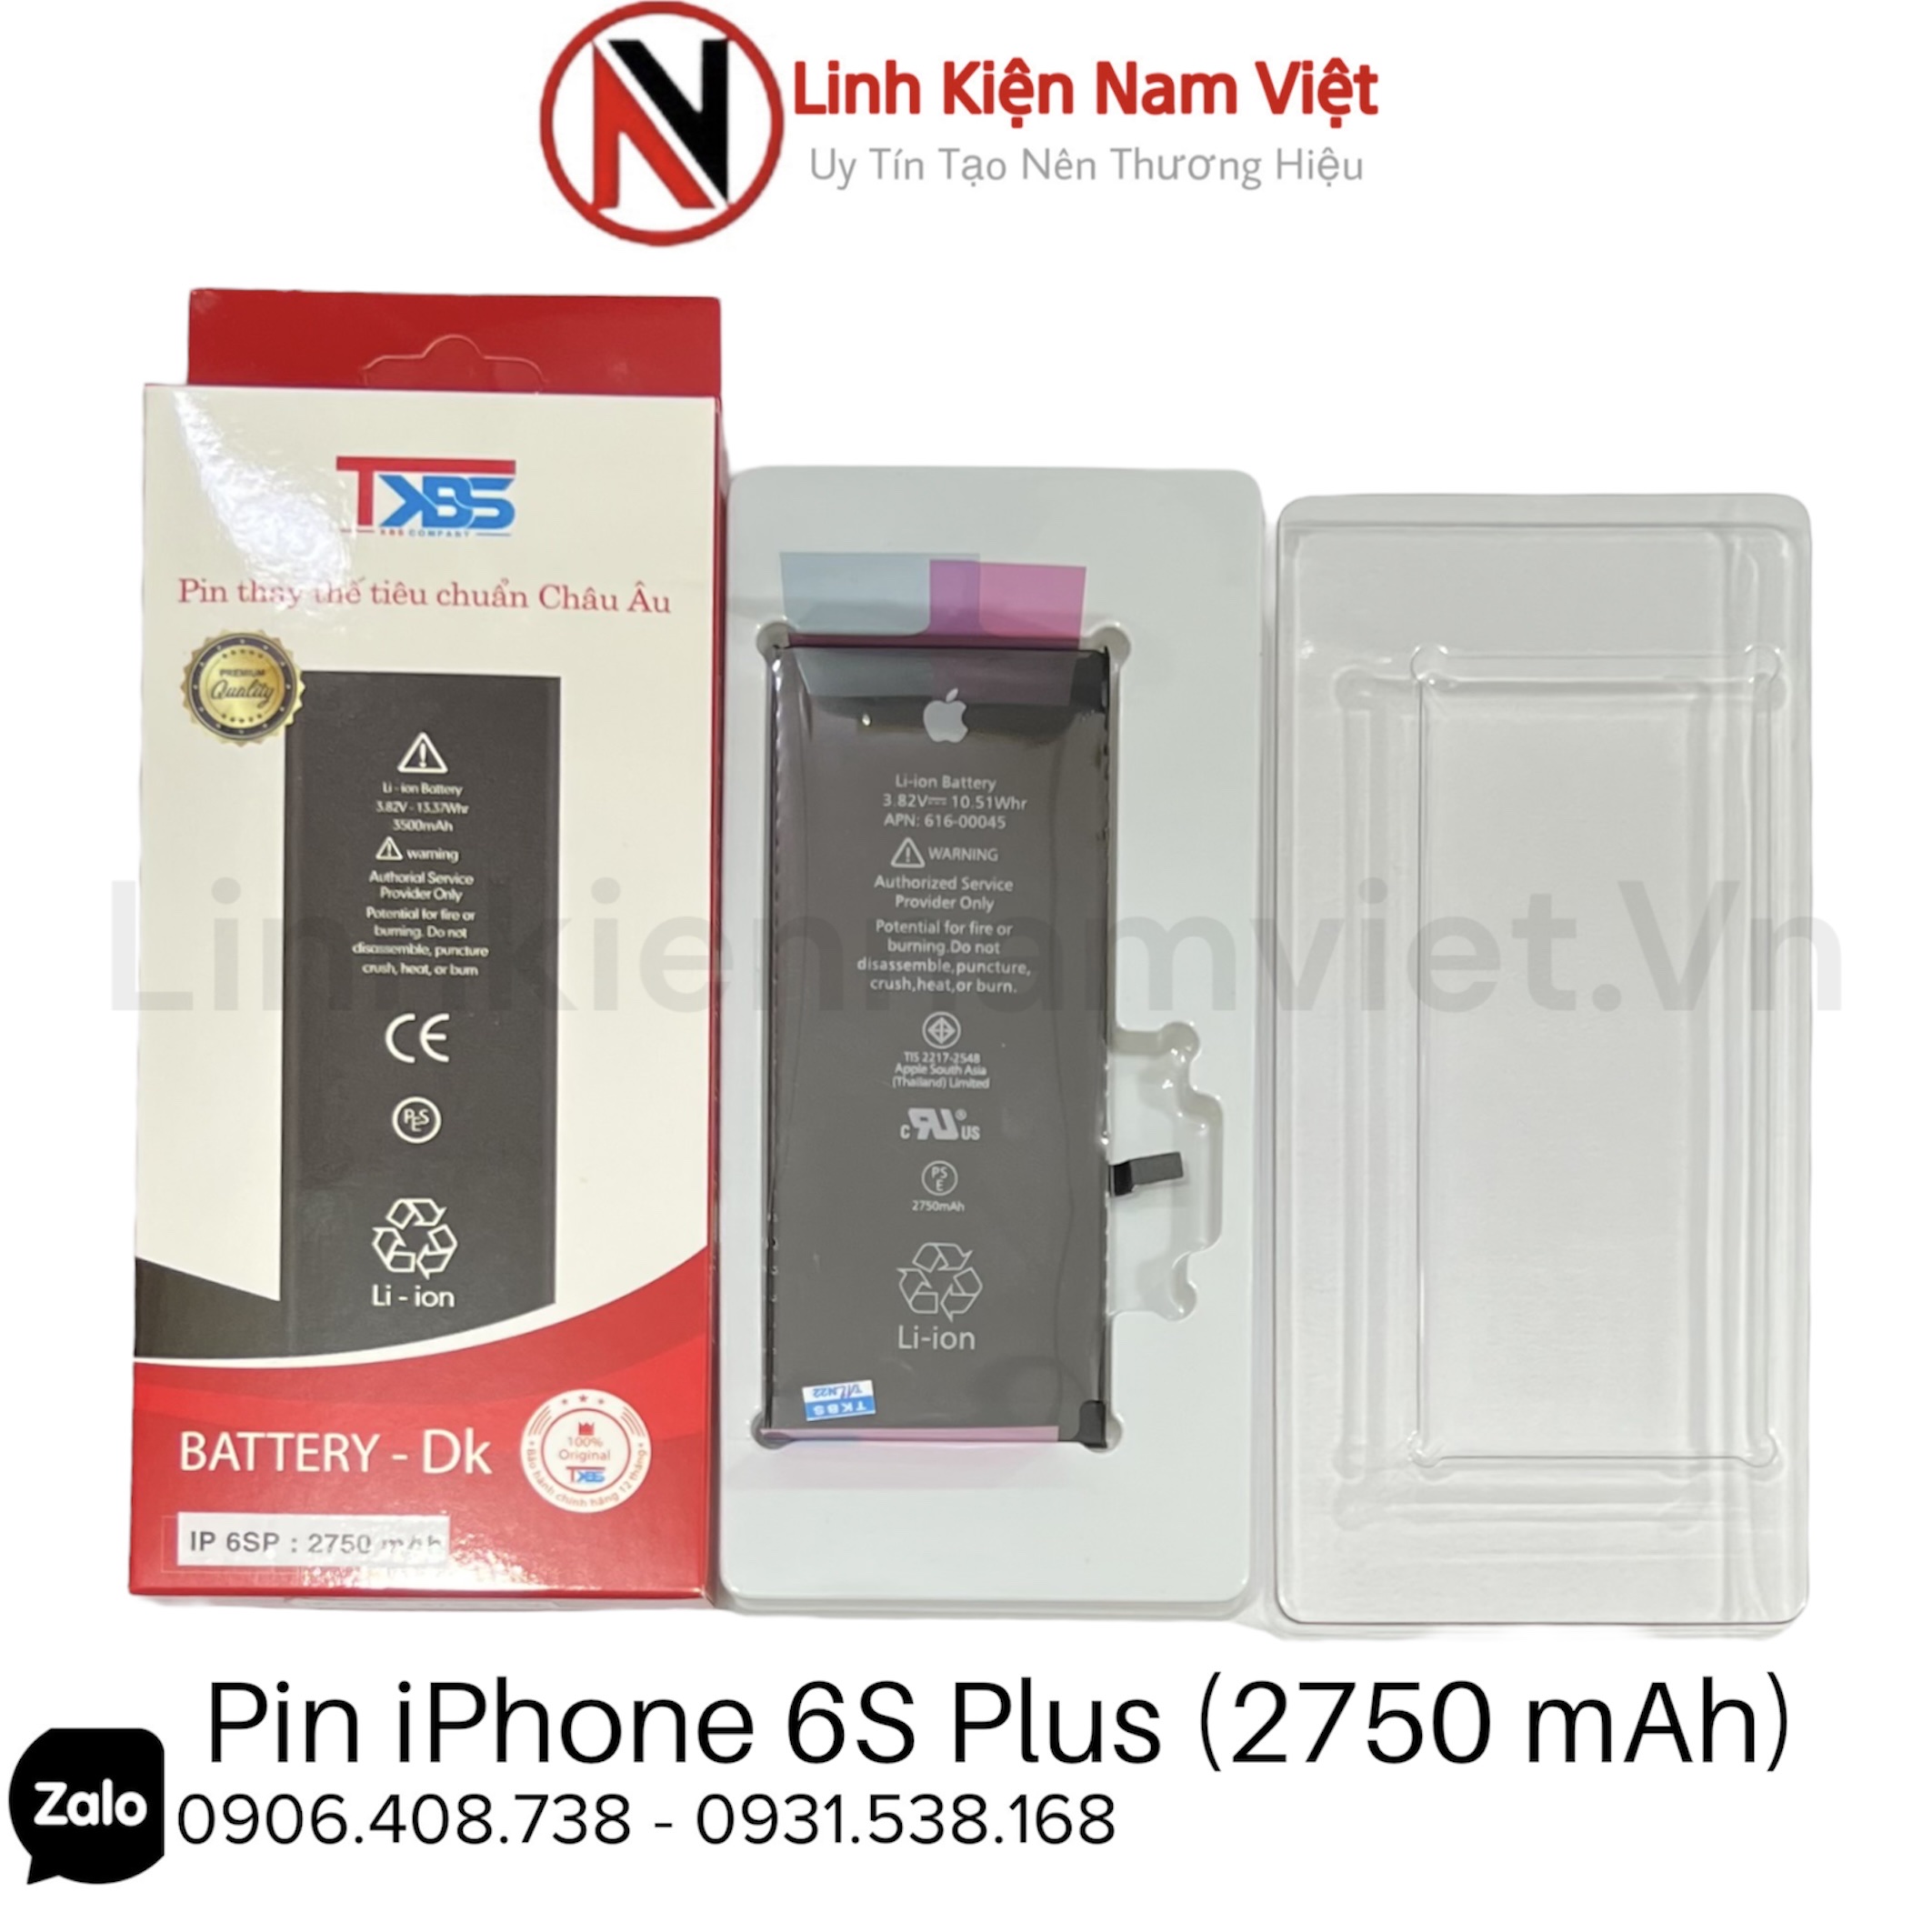 Thay pin iPhone 6S Plus chính hãng Vmas - Sửa Táo Nhanh